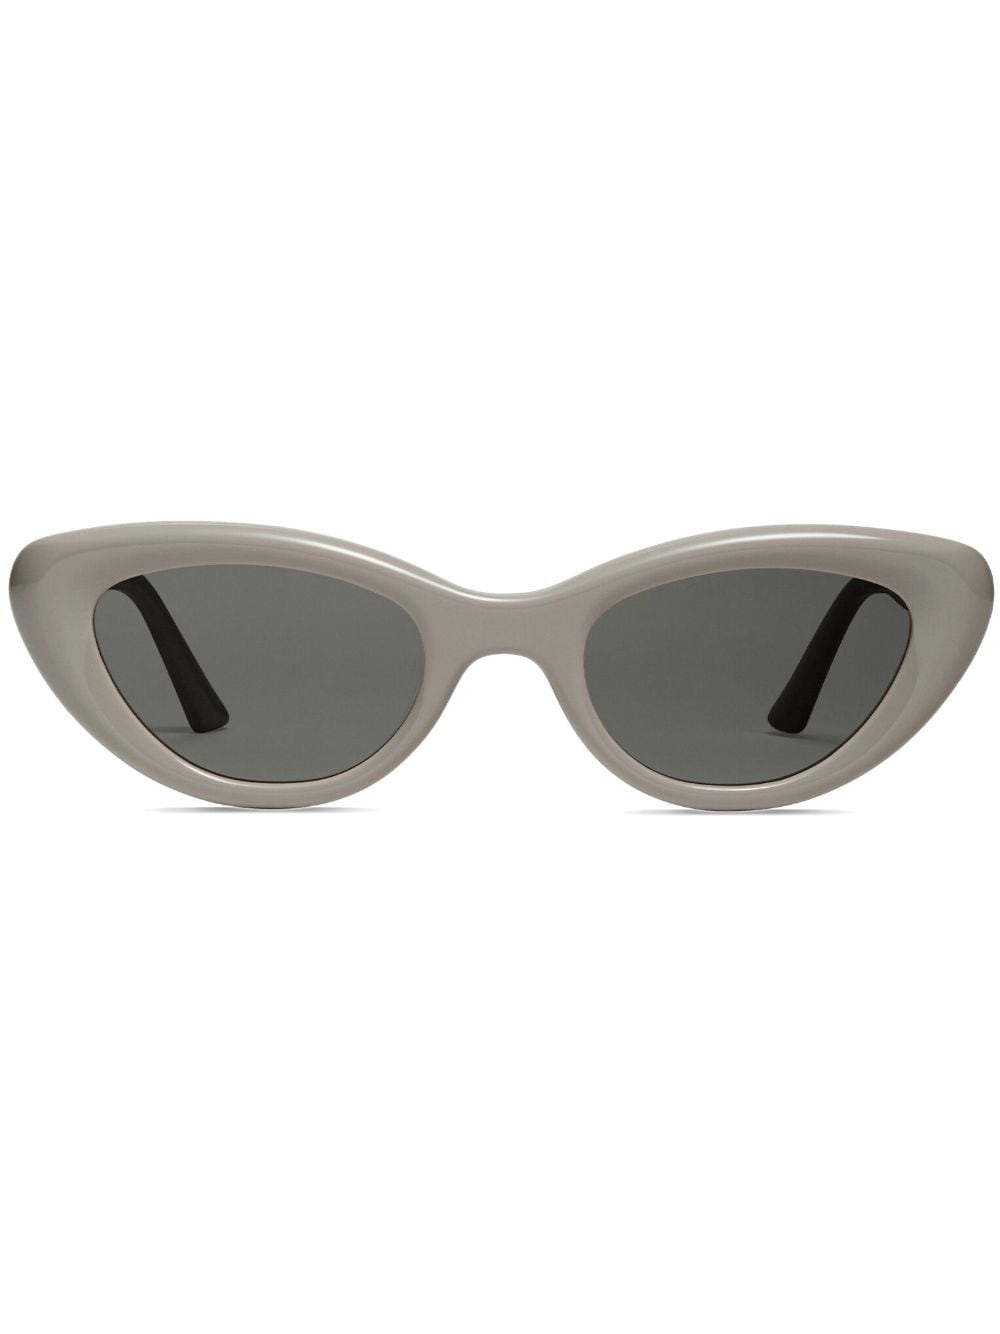 Gentle Monster Conic tinted sunglasses - Grey von Gentle Monster